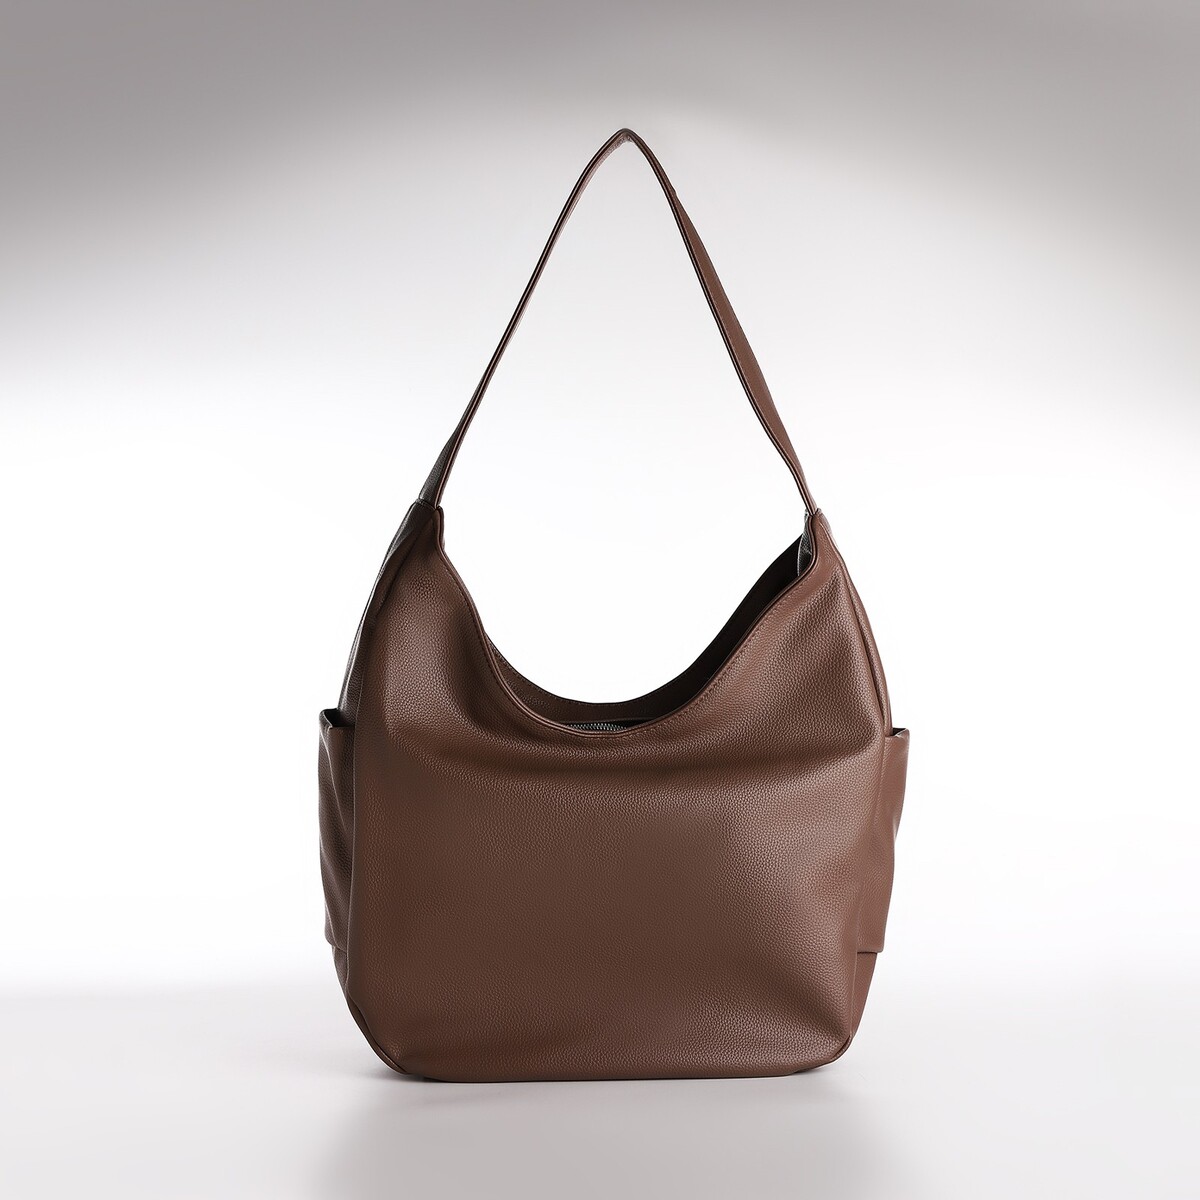 Сумка женская textura, мешок, большой размер, цвет коричневый сумка женская textura мешок большой размер коричневый